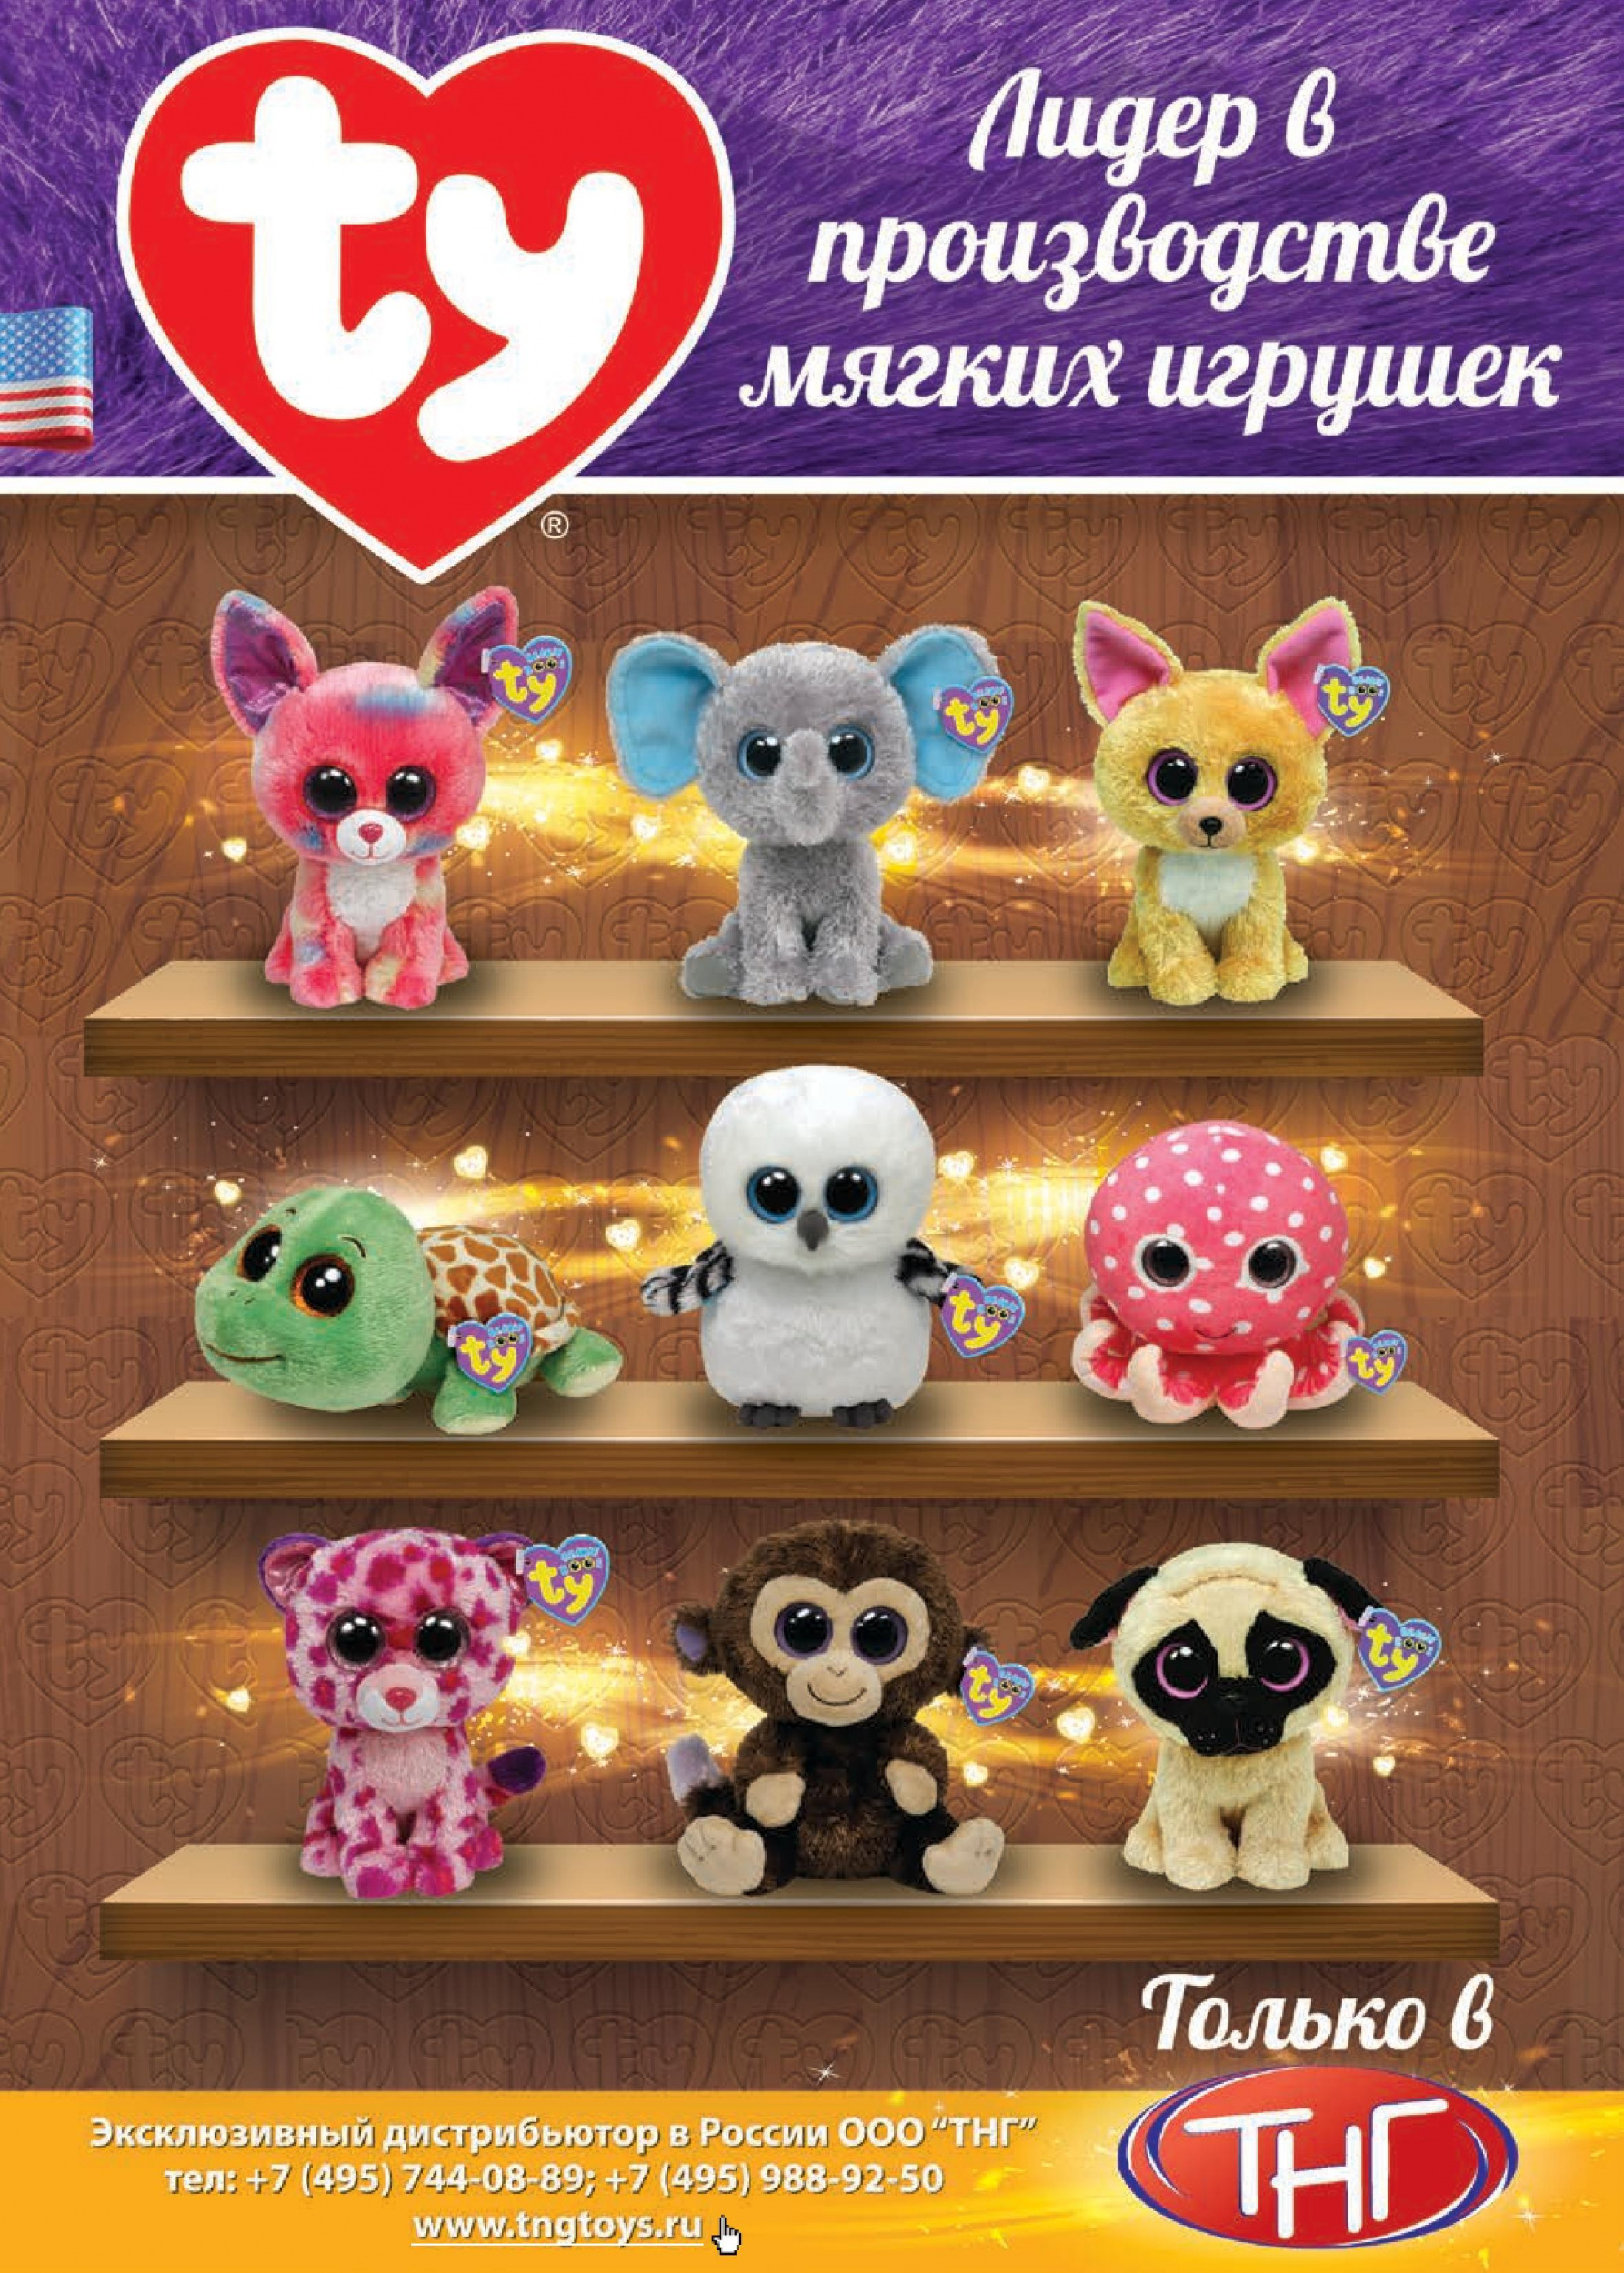 Производство мягких игрушек на заказ в Москве. Пошив по индивидуальному дизайну